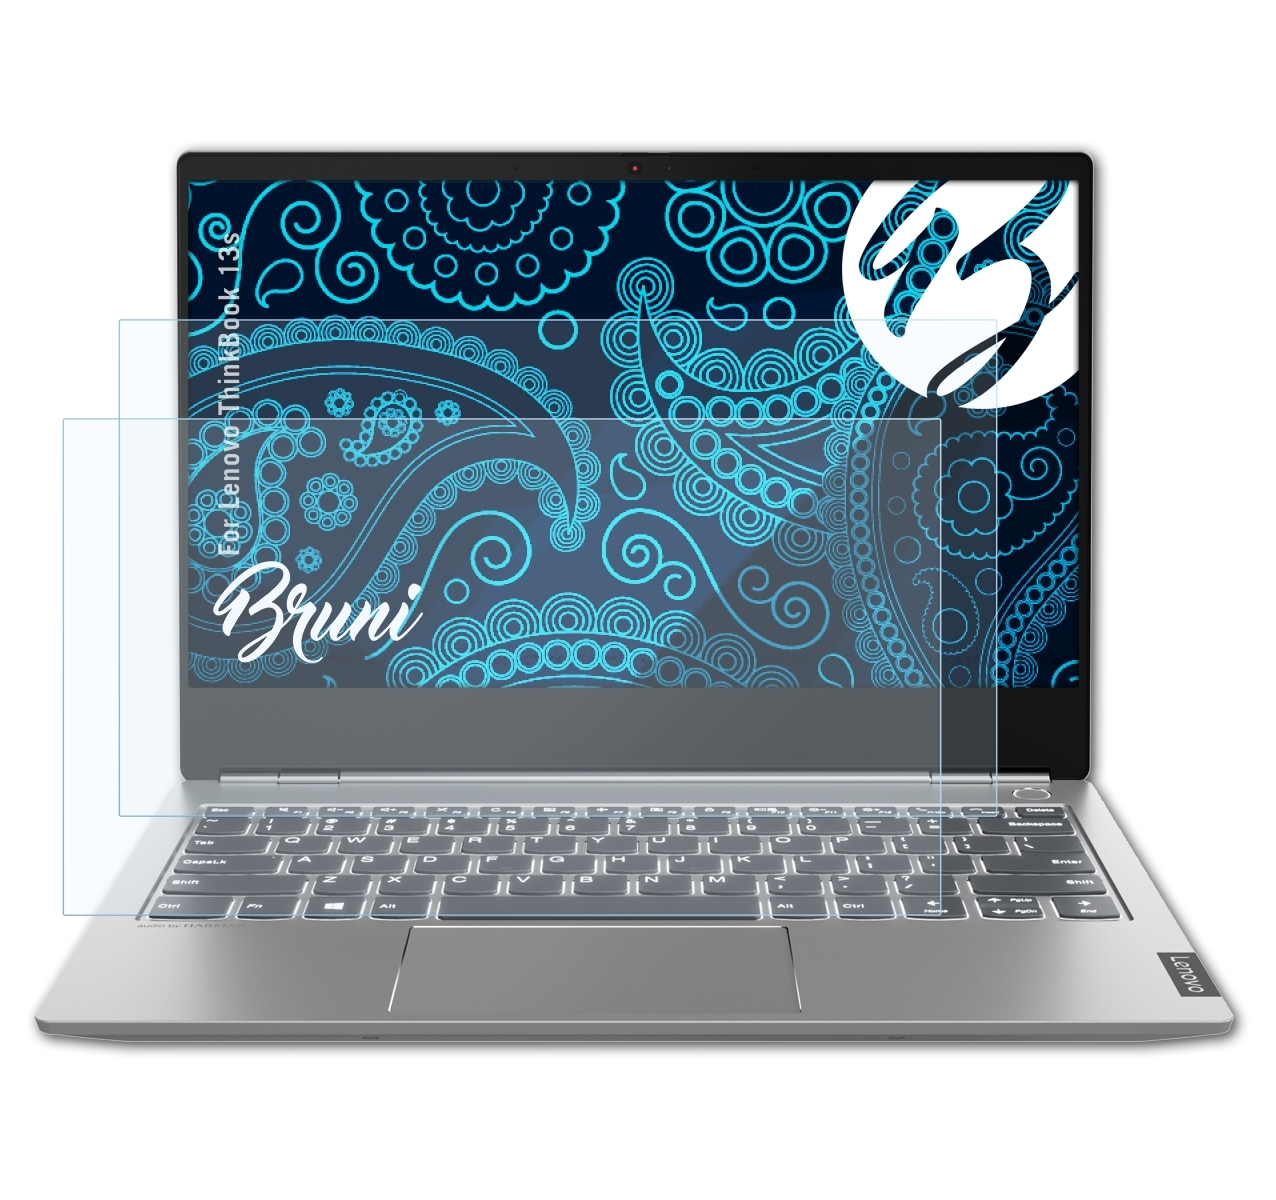 BRUNI 2x Lenovo ThinkBook Schutzfolie(für 13s) Basics-Clear